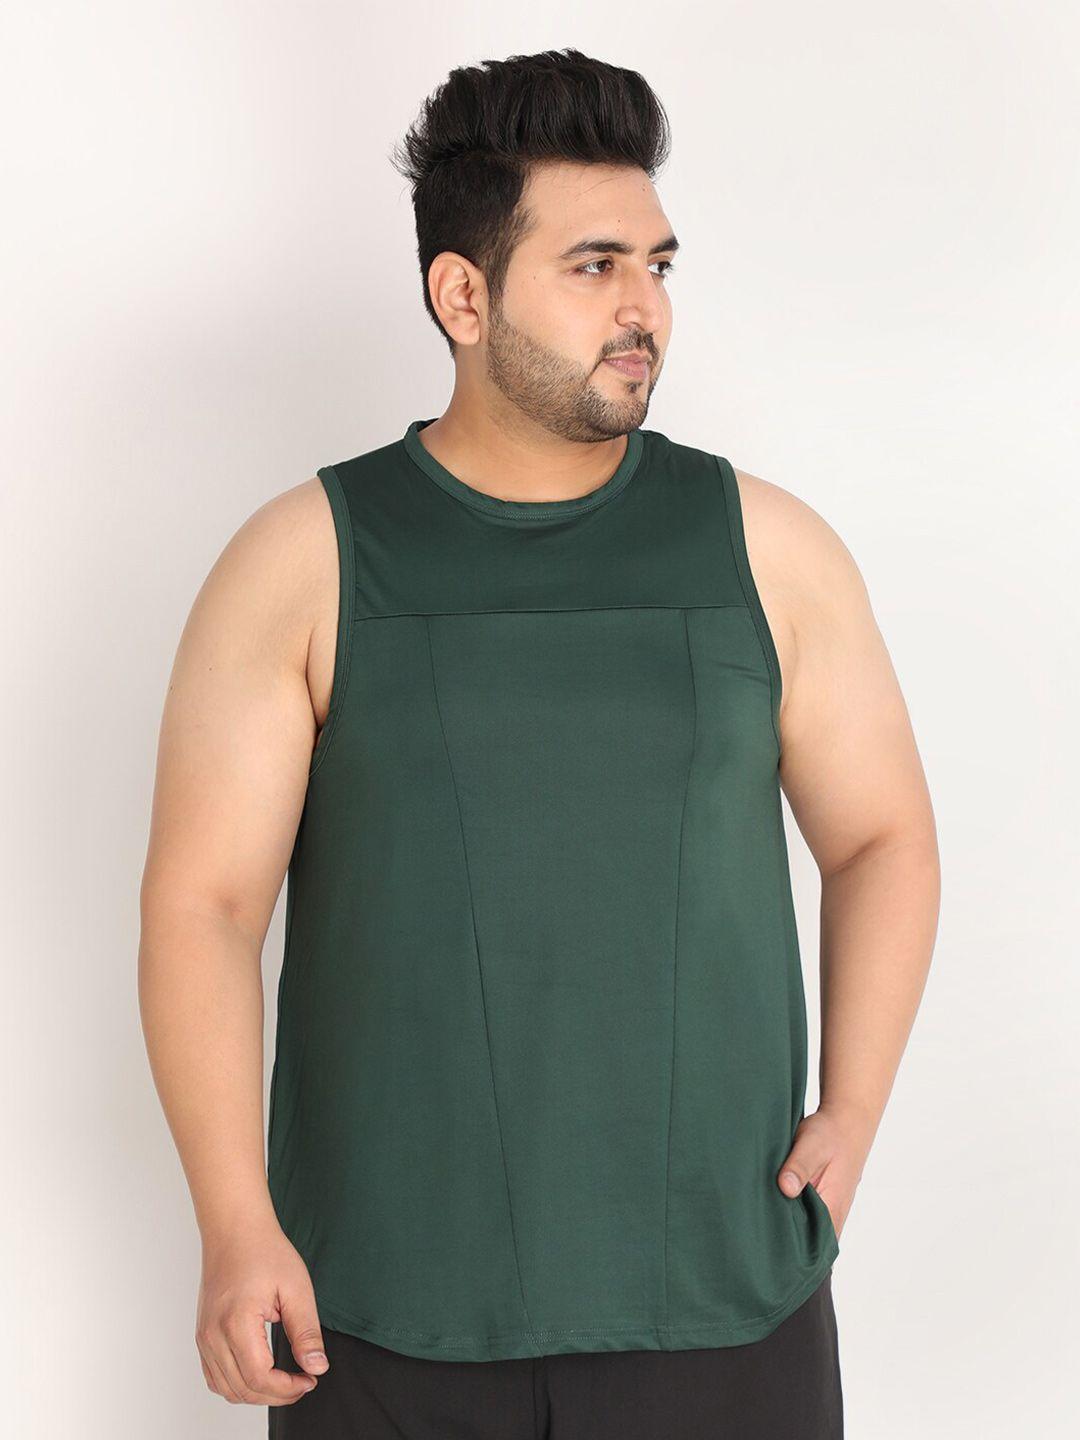 chkokko plus men bottle green solid sleeveless sports vest t-shirt